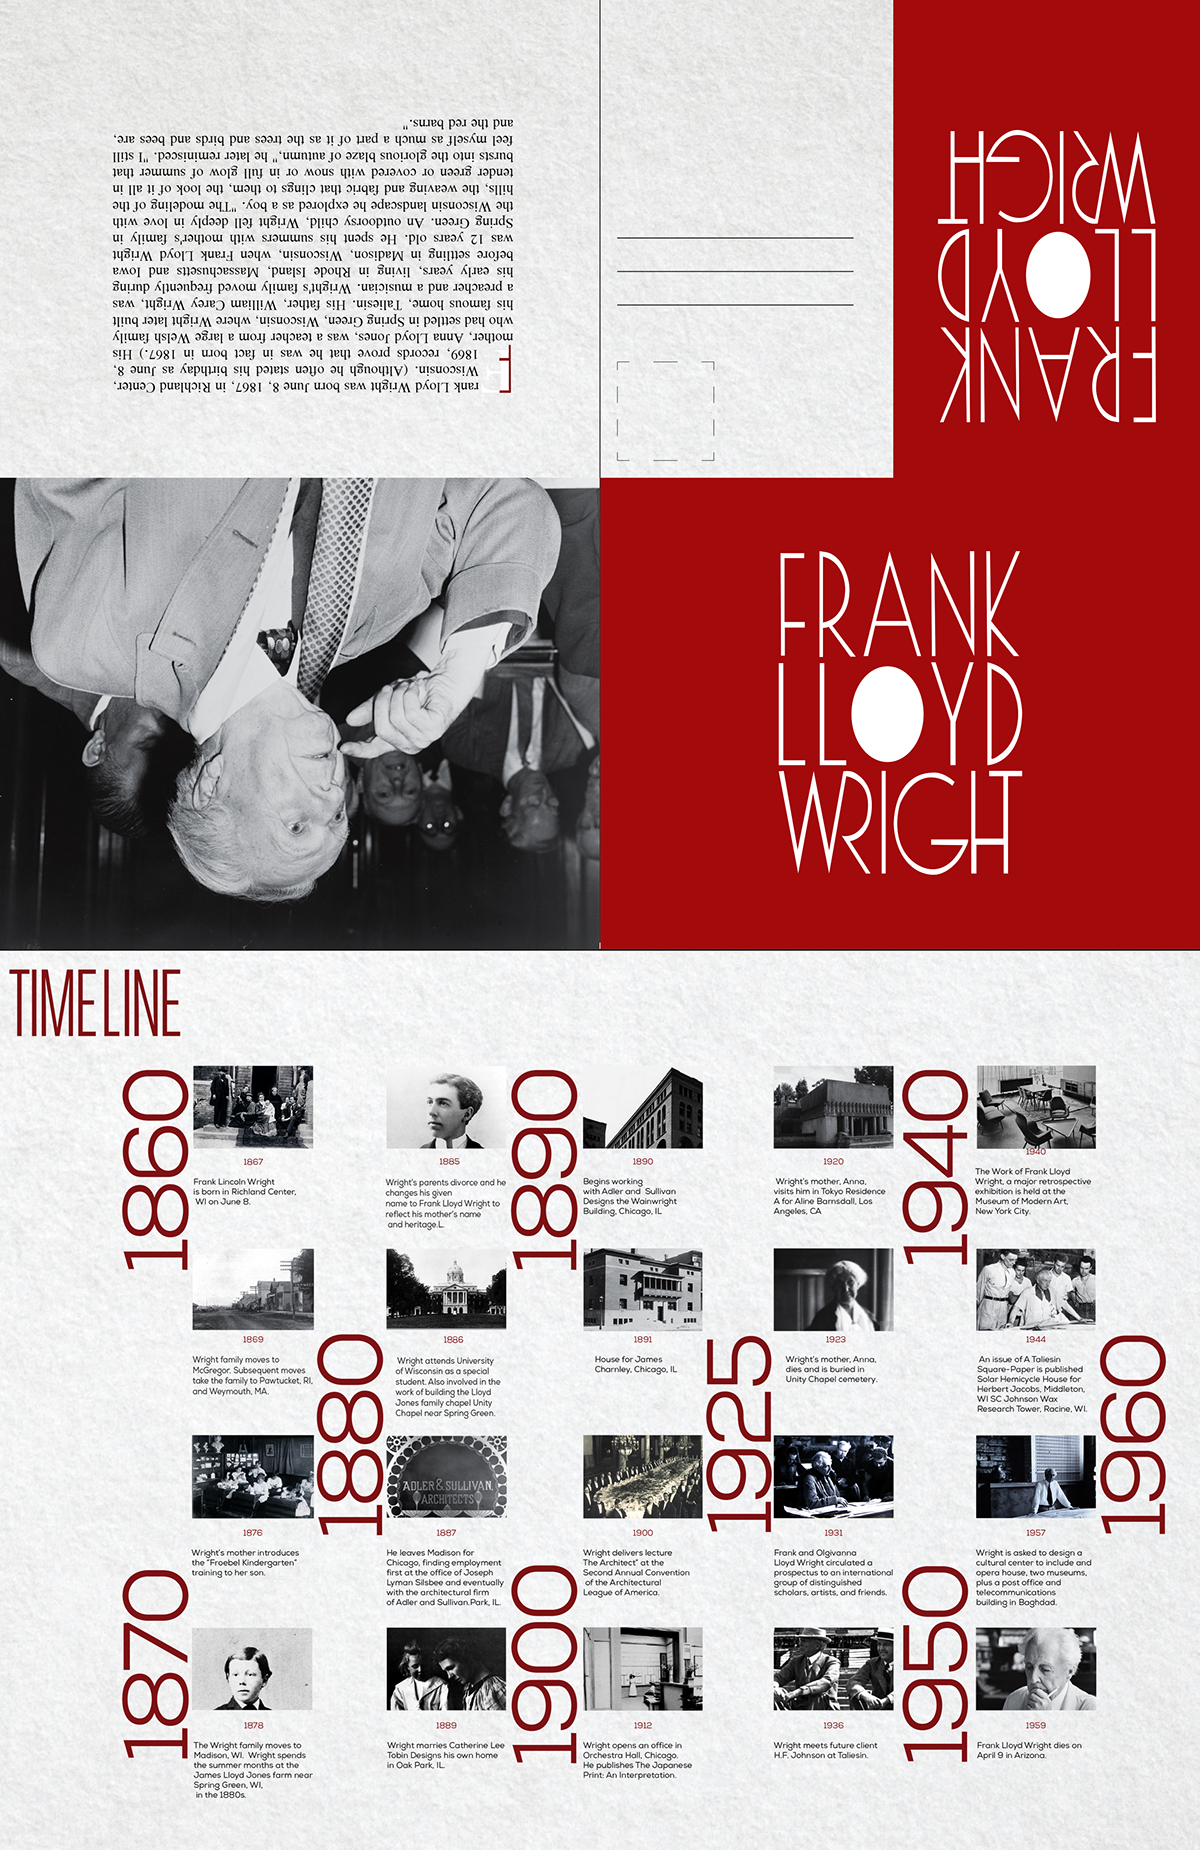 frank llyod wright